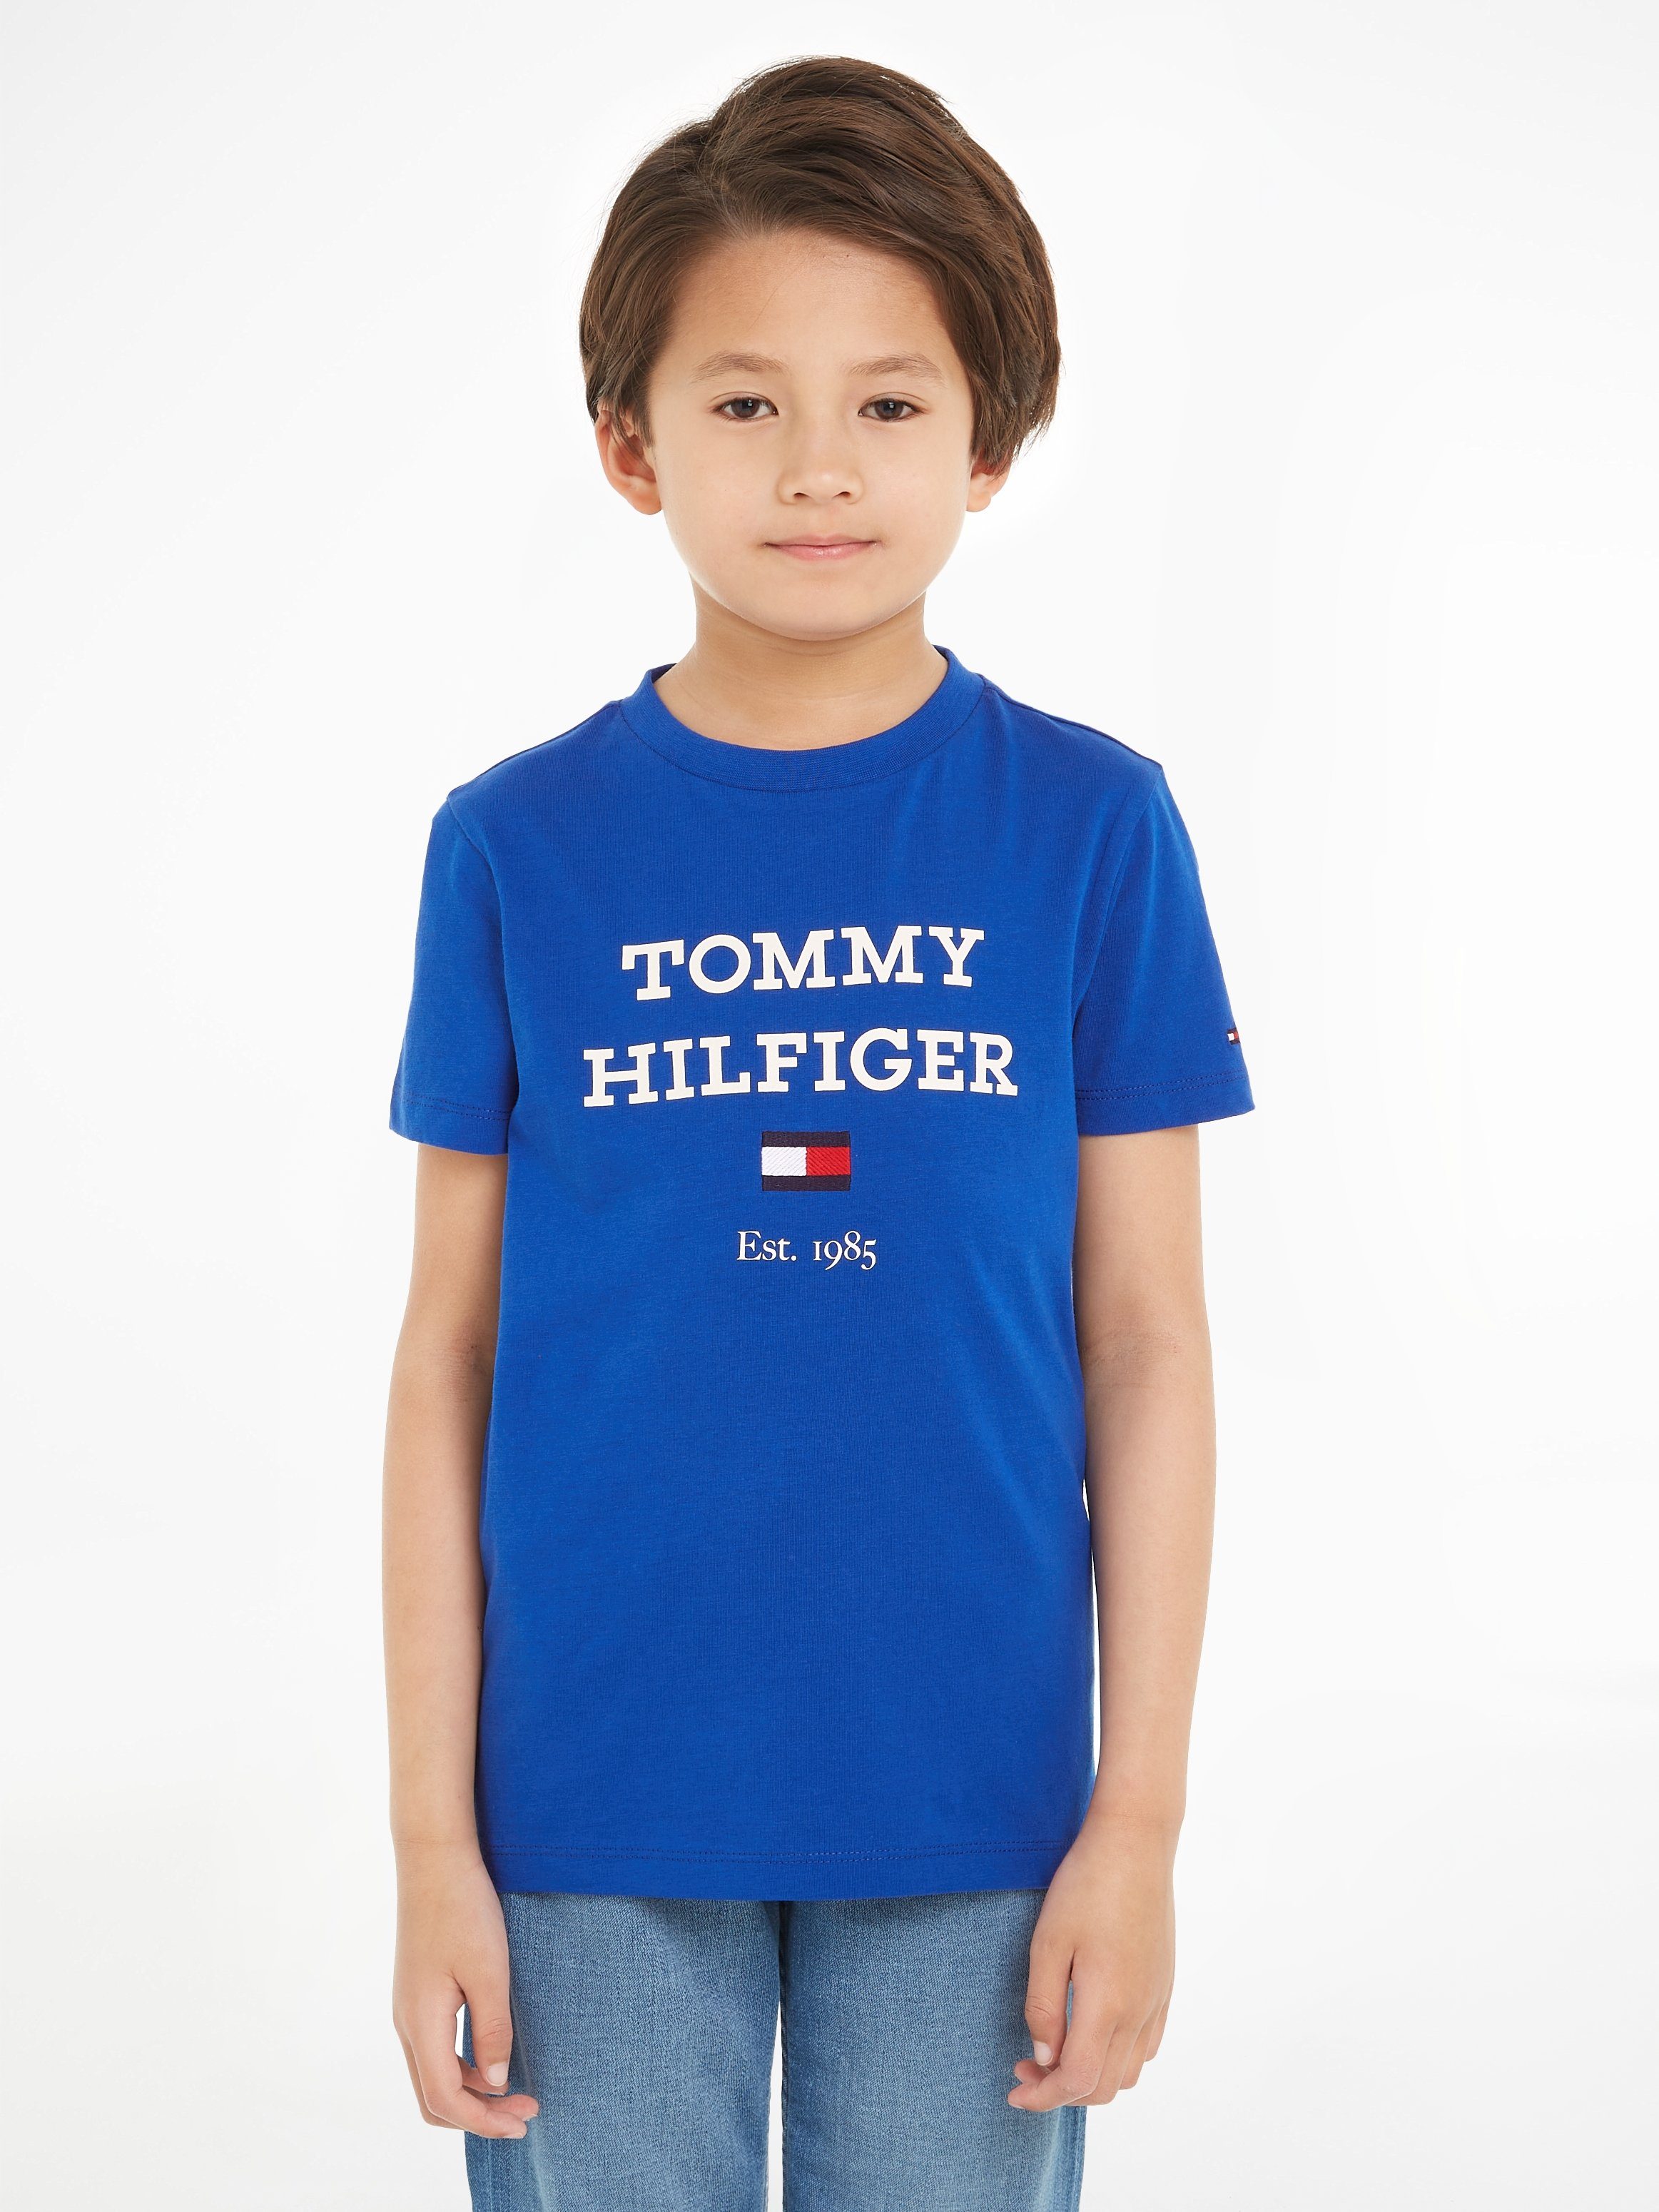 Tommy Hilfiger T-shirt met tekst helderblauw Jongens Katoen Ronde hals 104